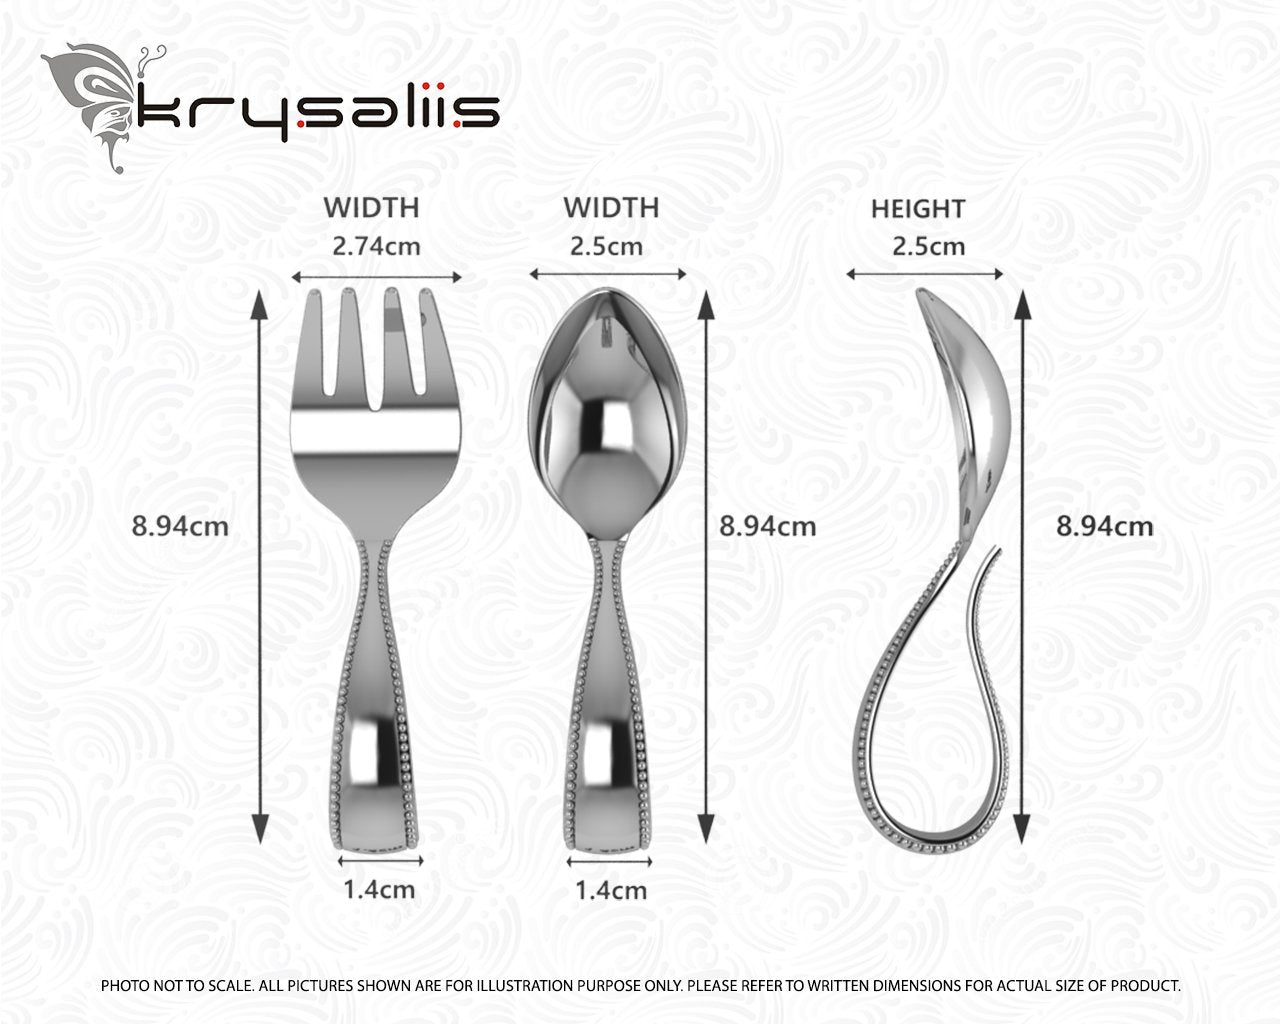 Beaded Loop Sterling Silver Baby Spoon & Fork Set by Krysaliis